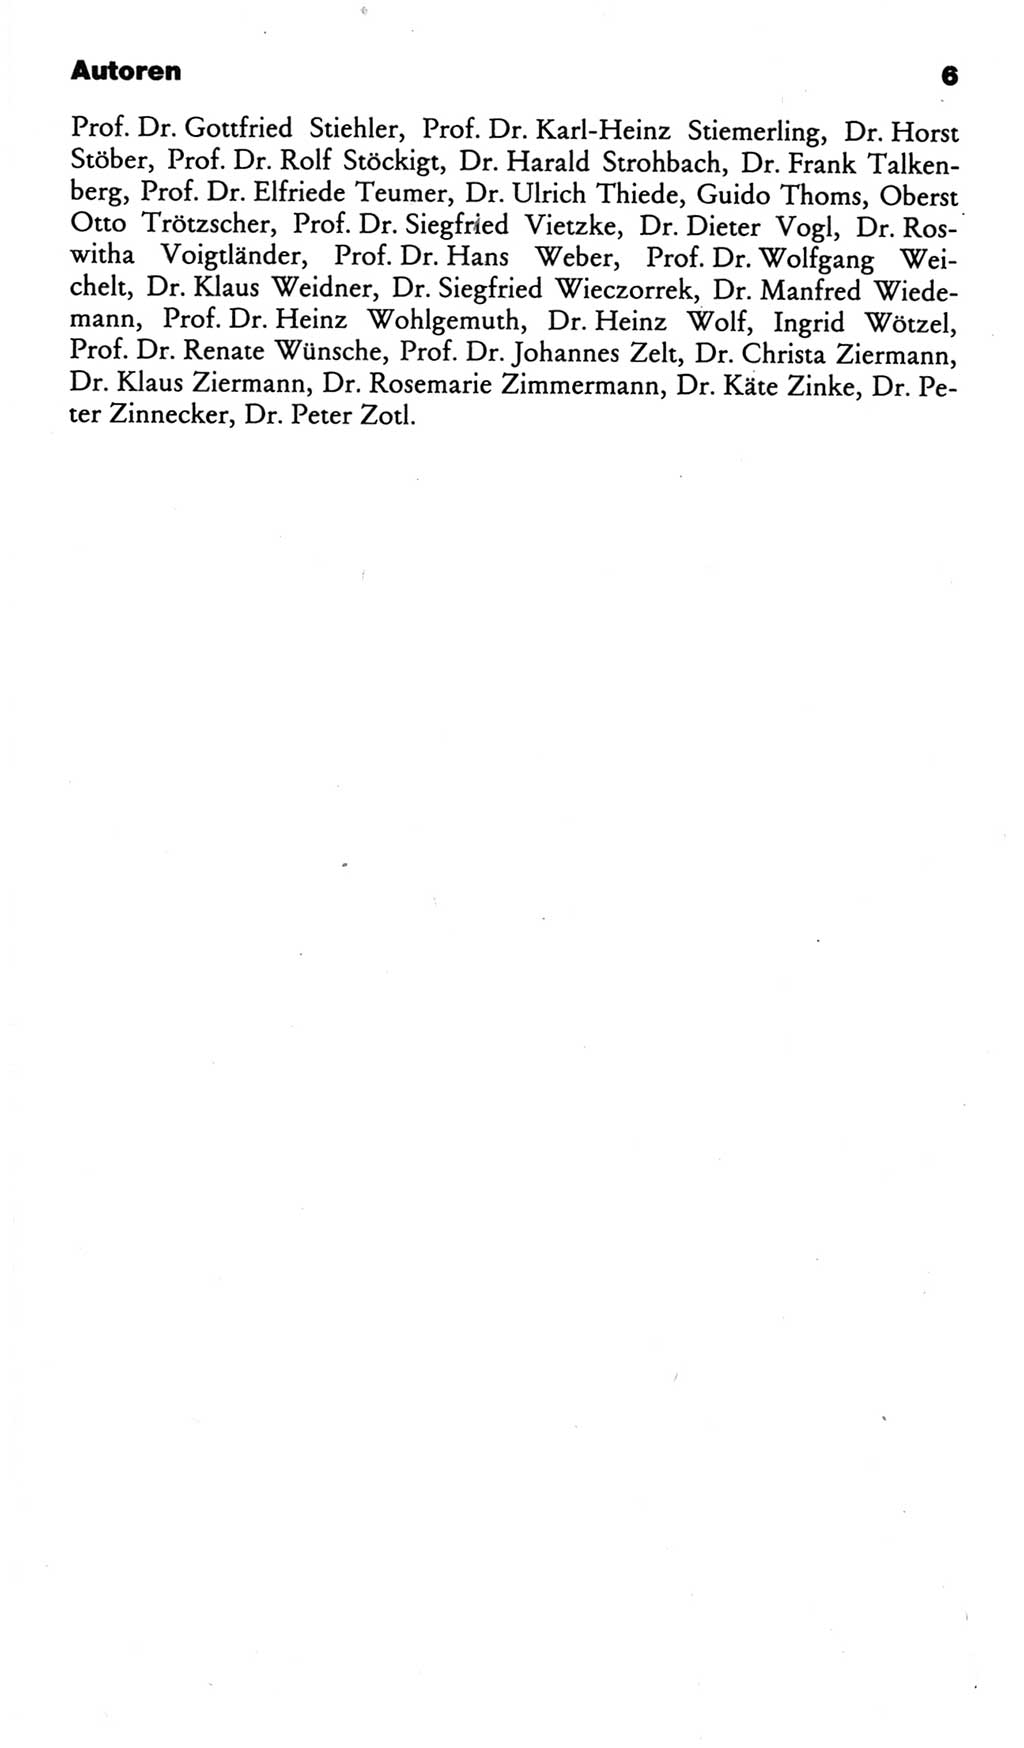 Kleines politisches Wörterbuch [Deutsche Demokratische Republik (DDR)] 1986, Seite 6 (Kl. pol. Wb. DDR 1986, S. 6)